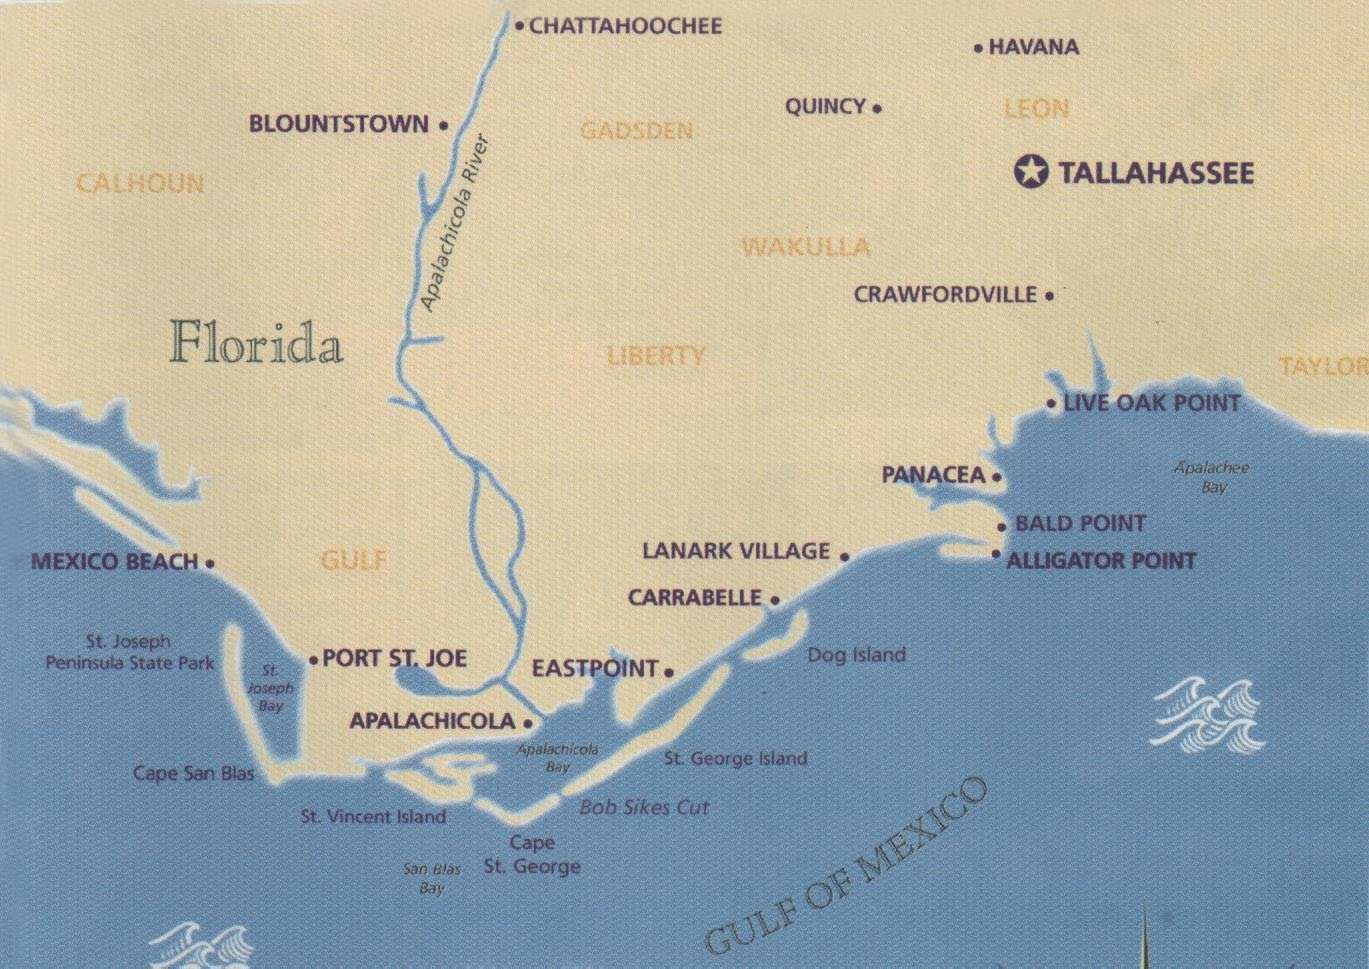 Coastal Gems Real Estate: Carrabelle, Fl- St. George Island, Fl - Carrabelle Florida Map